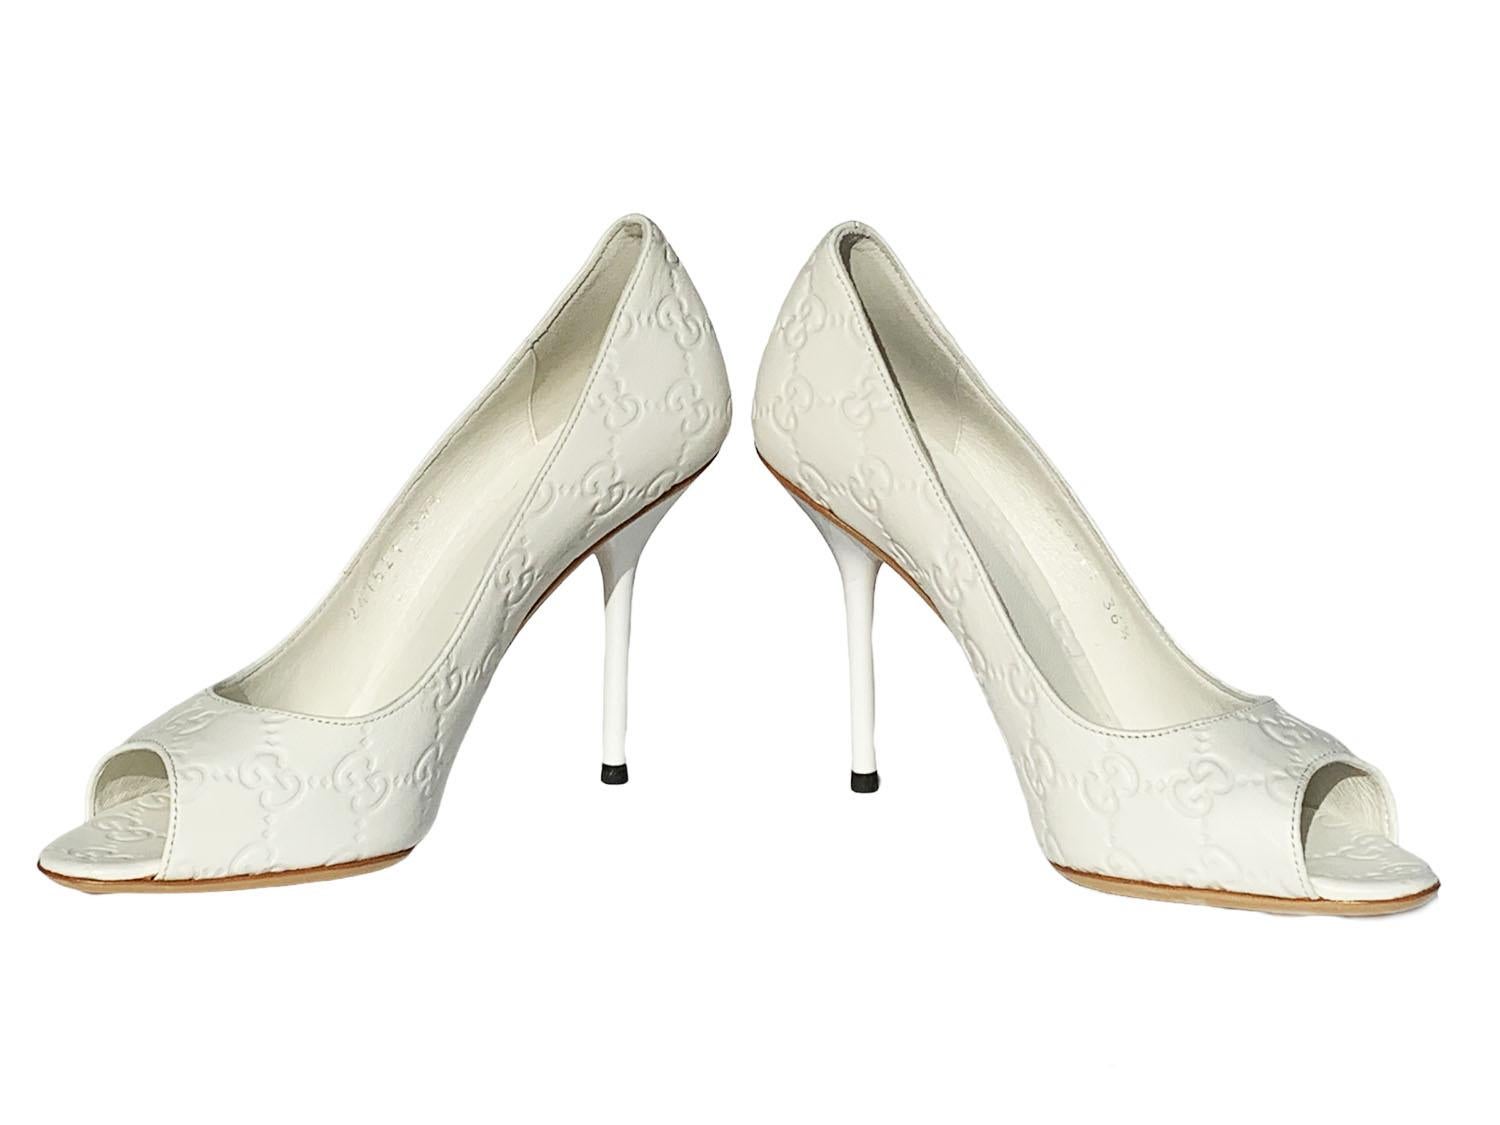 Neu Gucci GG Weiß Leder Schuhe Pumps
Italienische Größe - 36.5
Perfekt gefertigt aus dem edlen weißen Leder mit Guccissima-Prägung,  entworfen mit Peep-Toes, Leder-Innensohle und Sohle, Absatzhöhe - 4 Zoll.
Hergestellt in Italien.
Neu mit Box.